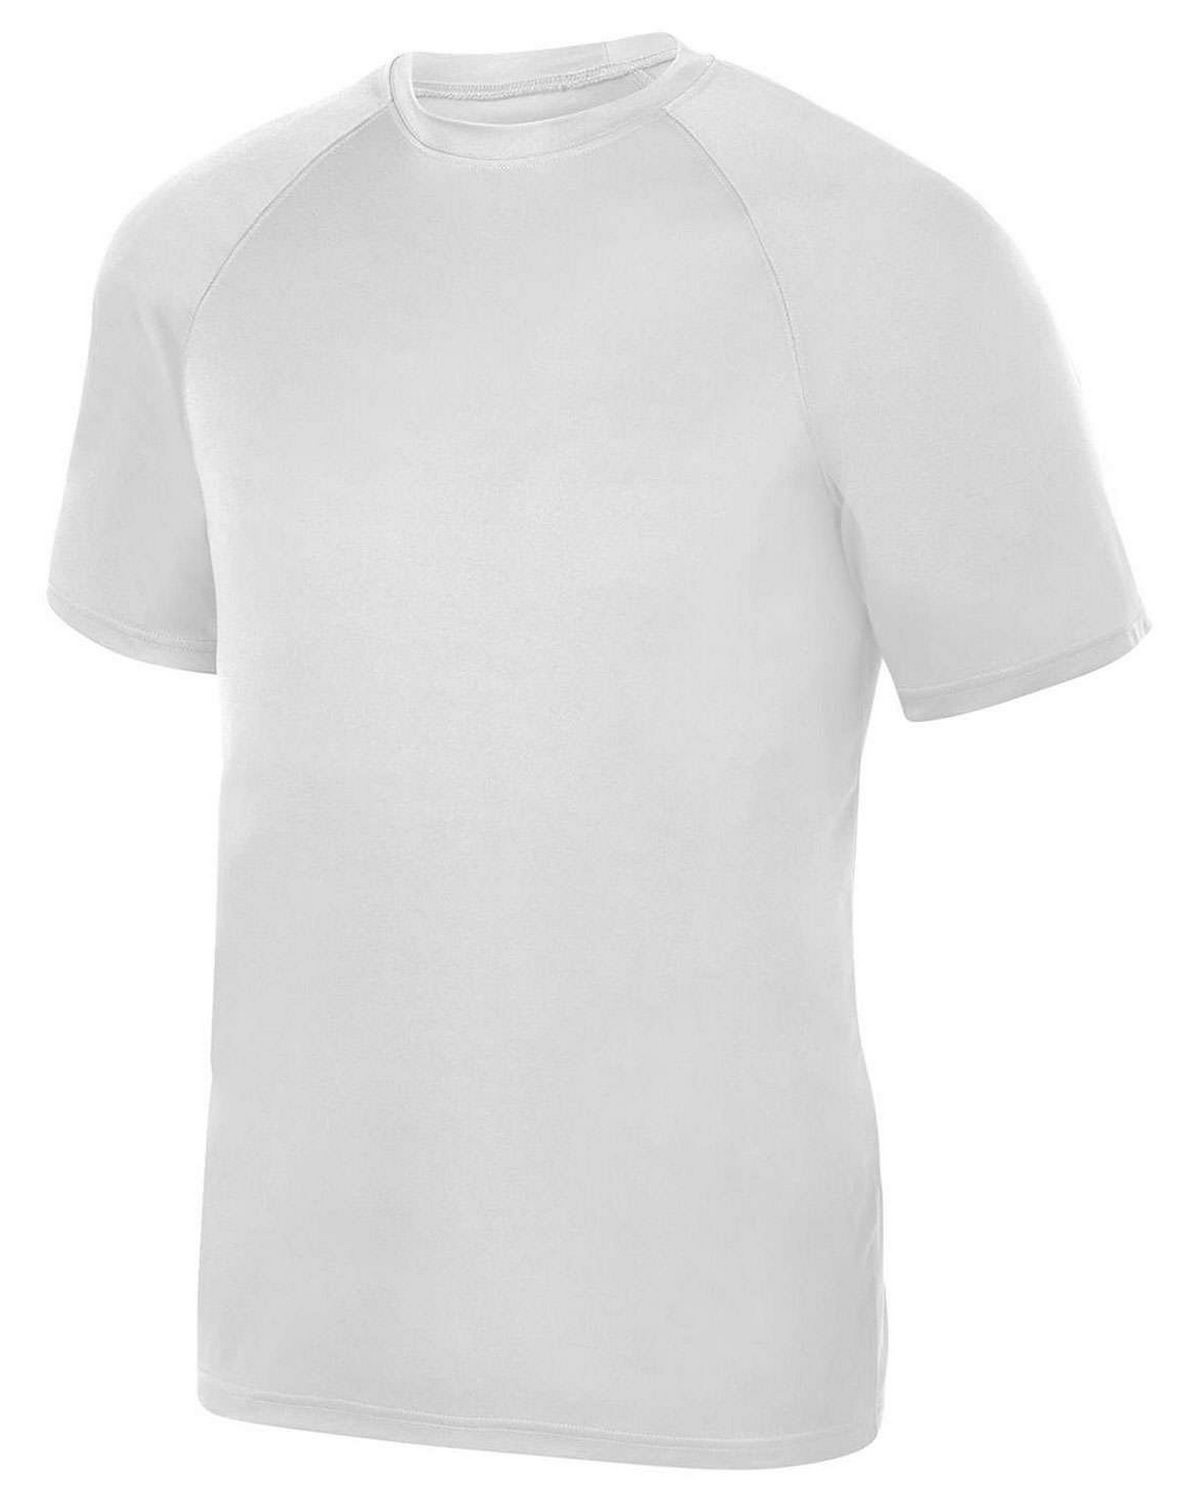 Augusta Sportswear 2790 Attain Wicking Unisex T-Shirt